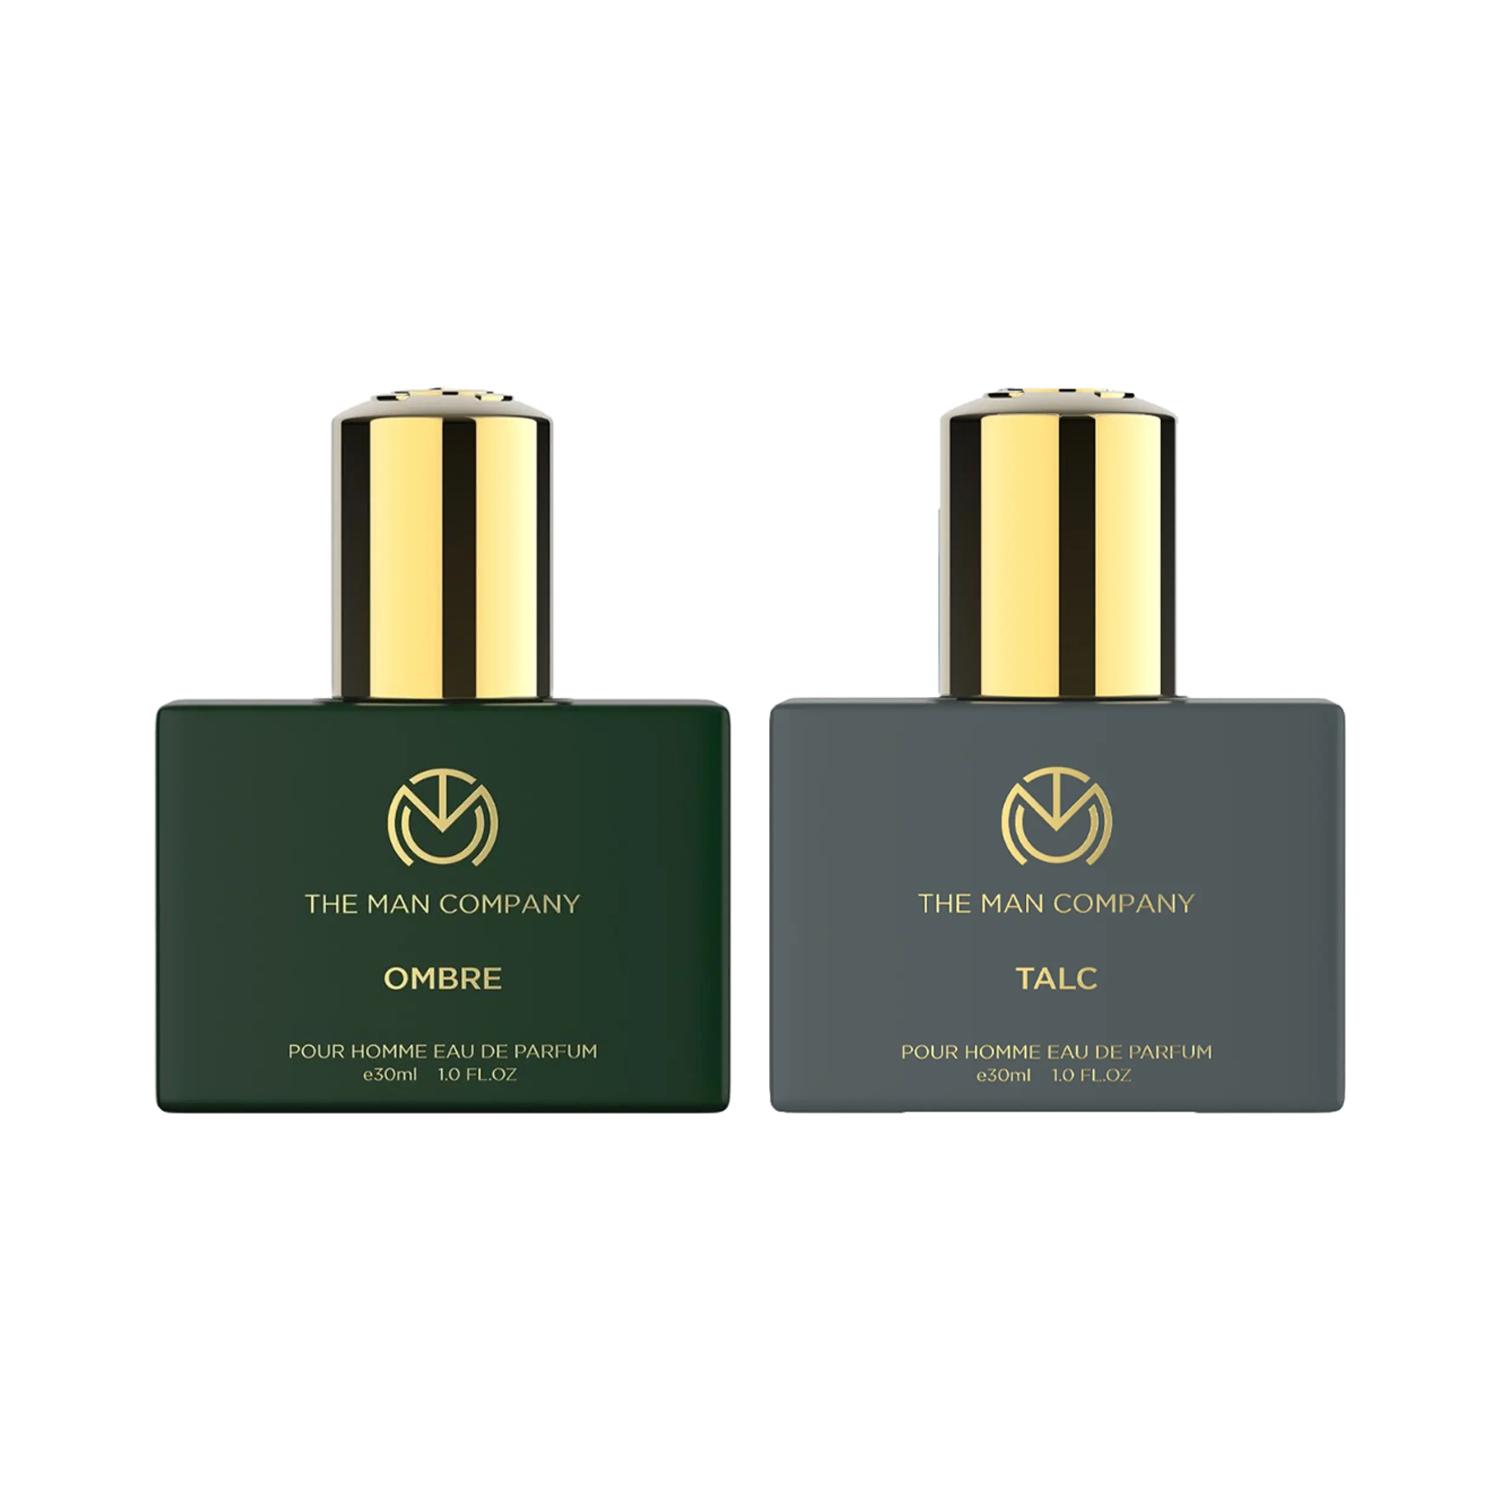 The Man Company | The Man Company Perfume Duo